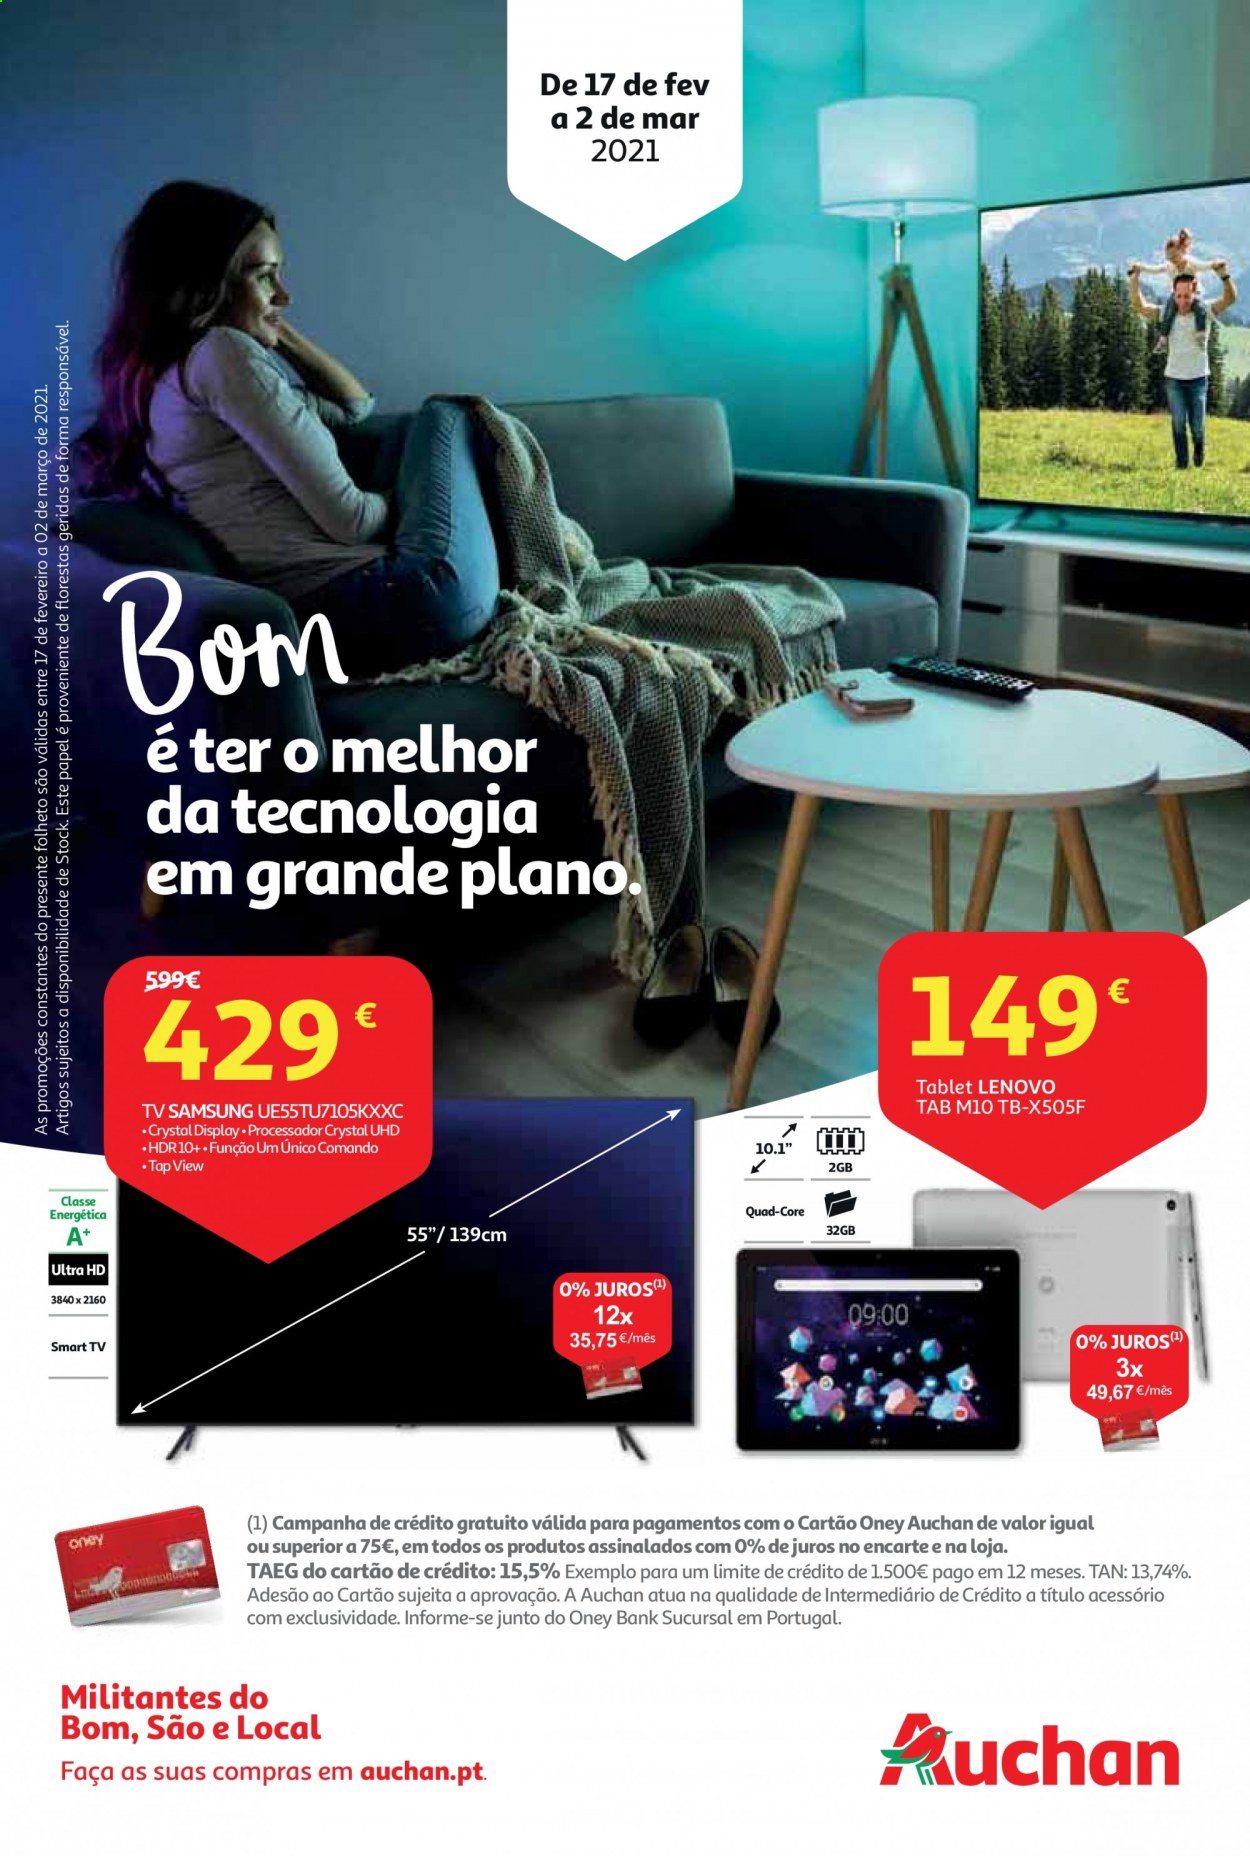 thumbnail - Folheto Auchan - 17.2.2021 - 2.3.2021 - Produtos em promoção - Samsung, Lenovo, tablet, Smart TV. Página 29.